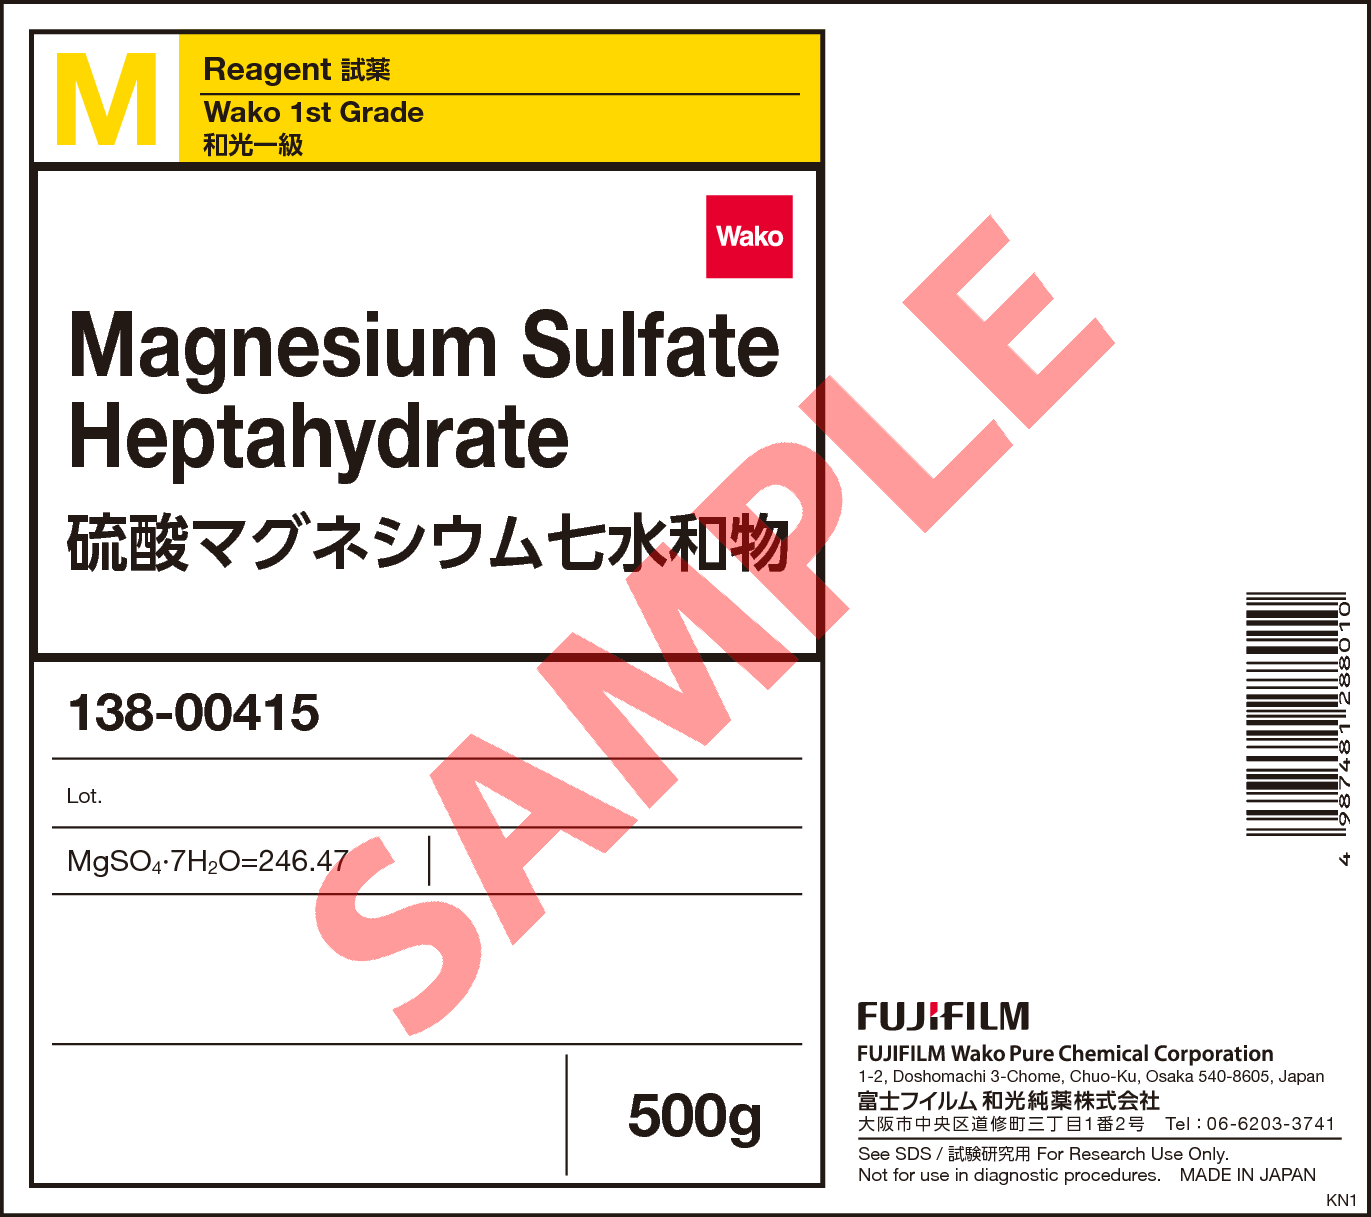 99 8 硫酸マグネシウム七水和物 Magnesium Sulfate Heptahydrate 134 138 詳細情報 試薬 富士フイルム和光純薬